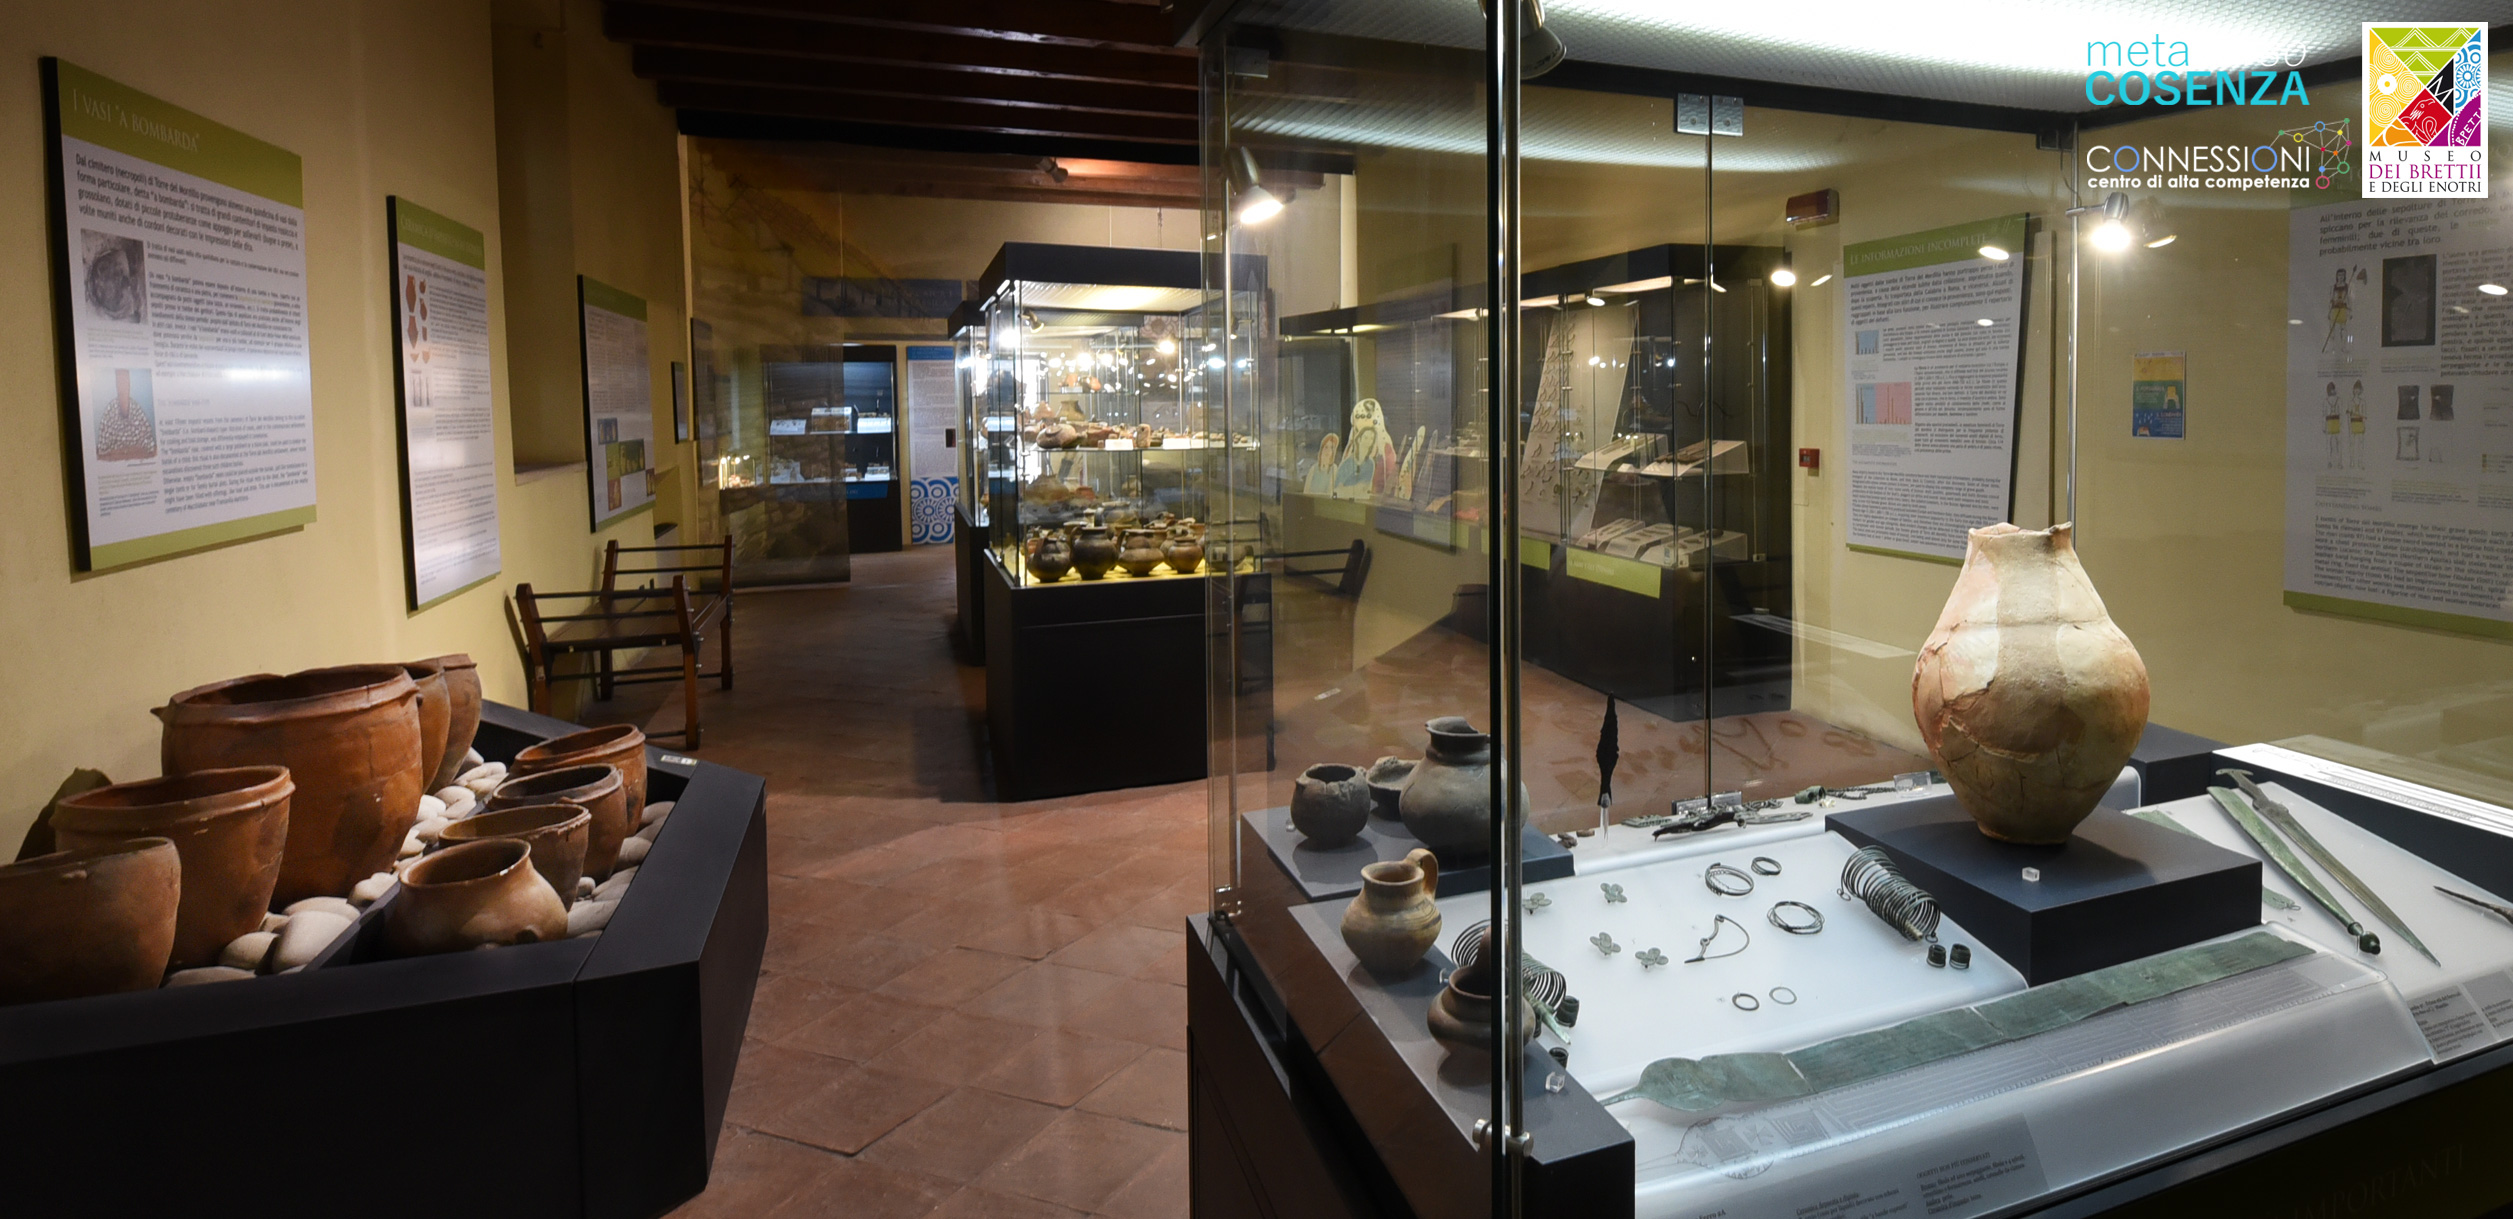 Museo dei Brettii e degli Enotri MetaversoCOSENZA